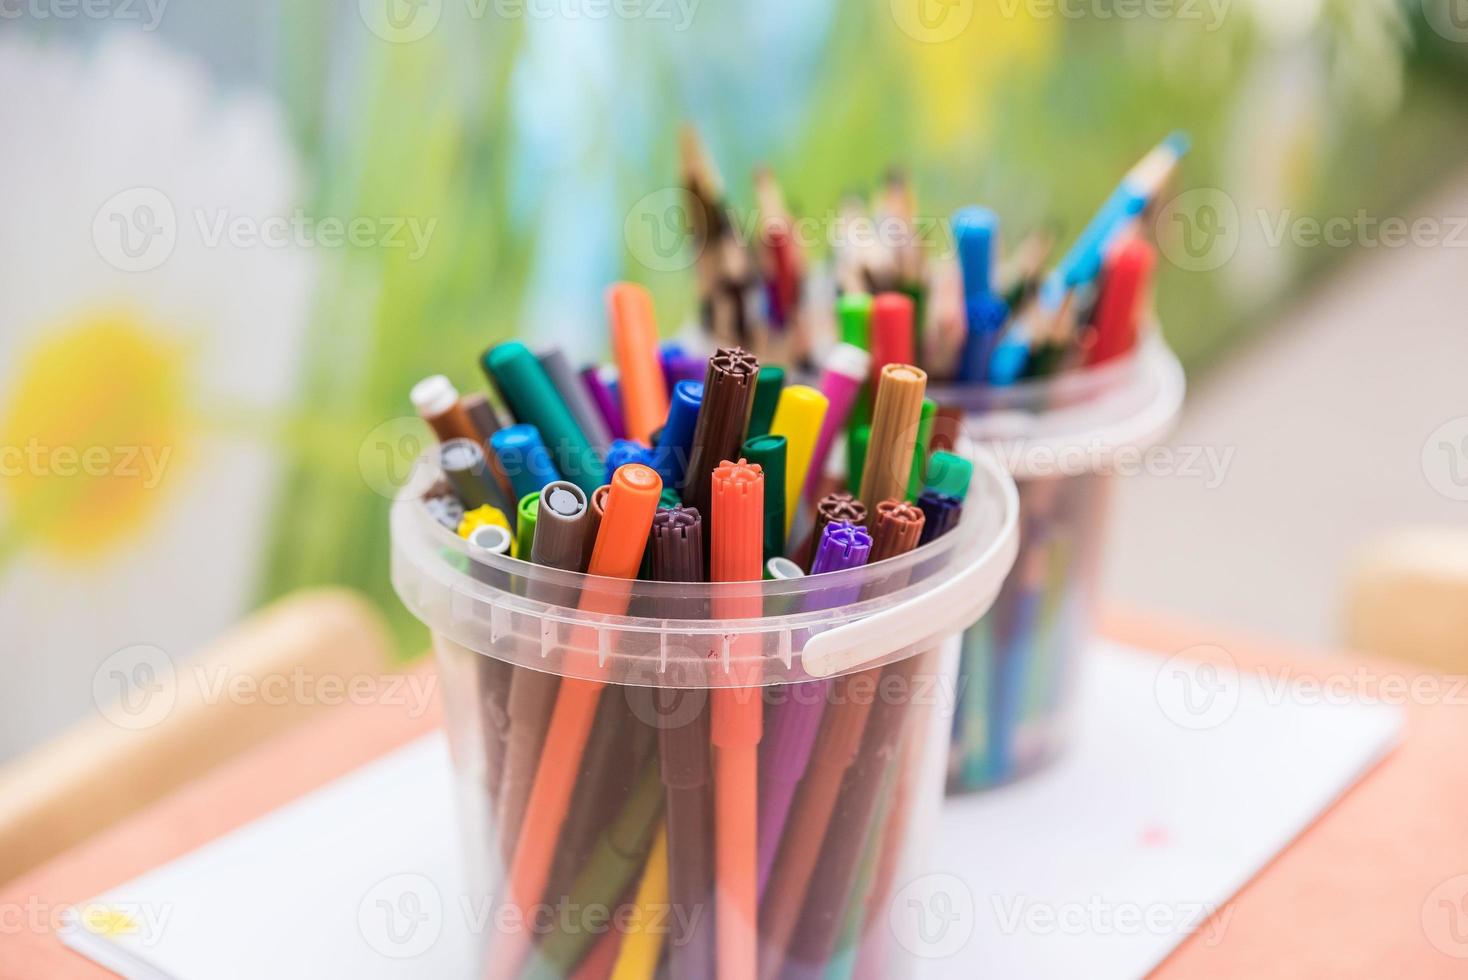 herramientas de dibujo lápices de colores en vaso de vidrio foto